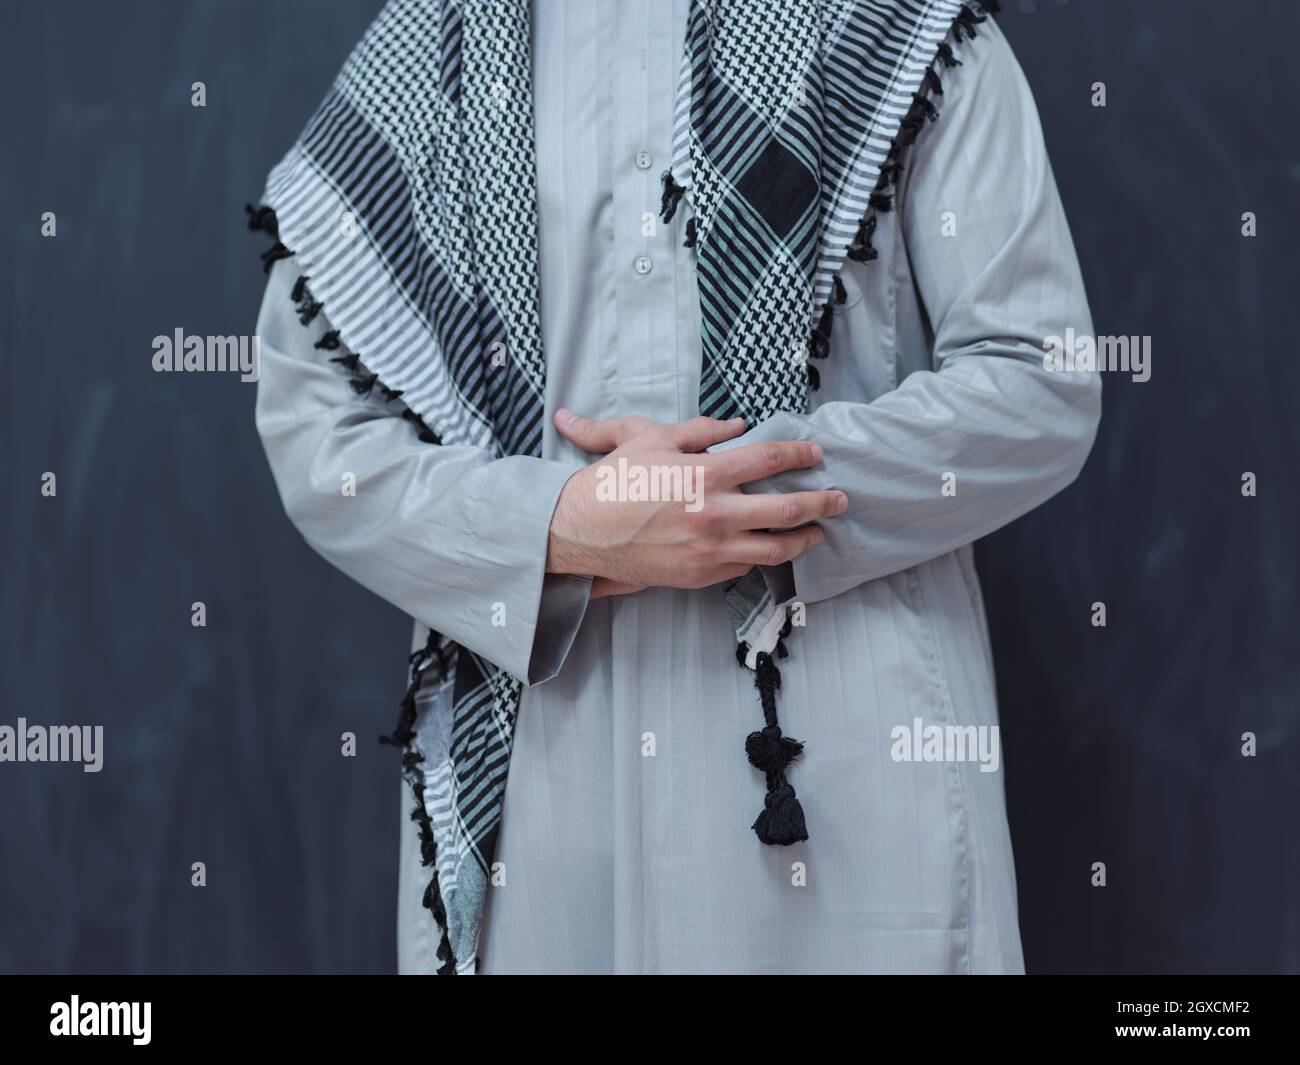 Porträt des jungen arabischen Mannes in traditioneller Kleidung vor schwarzer Tafel, die moderne islam-Mode und ramadan-Kareem-Konzept darstellt Stockfoto